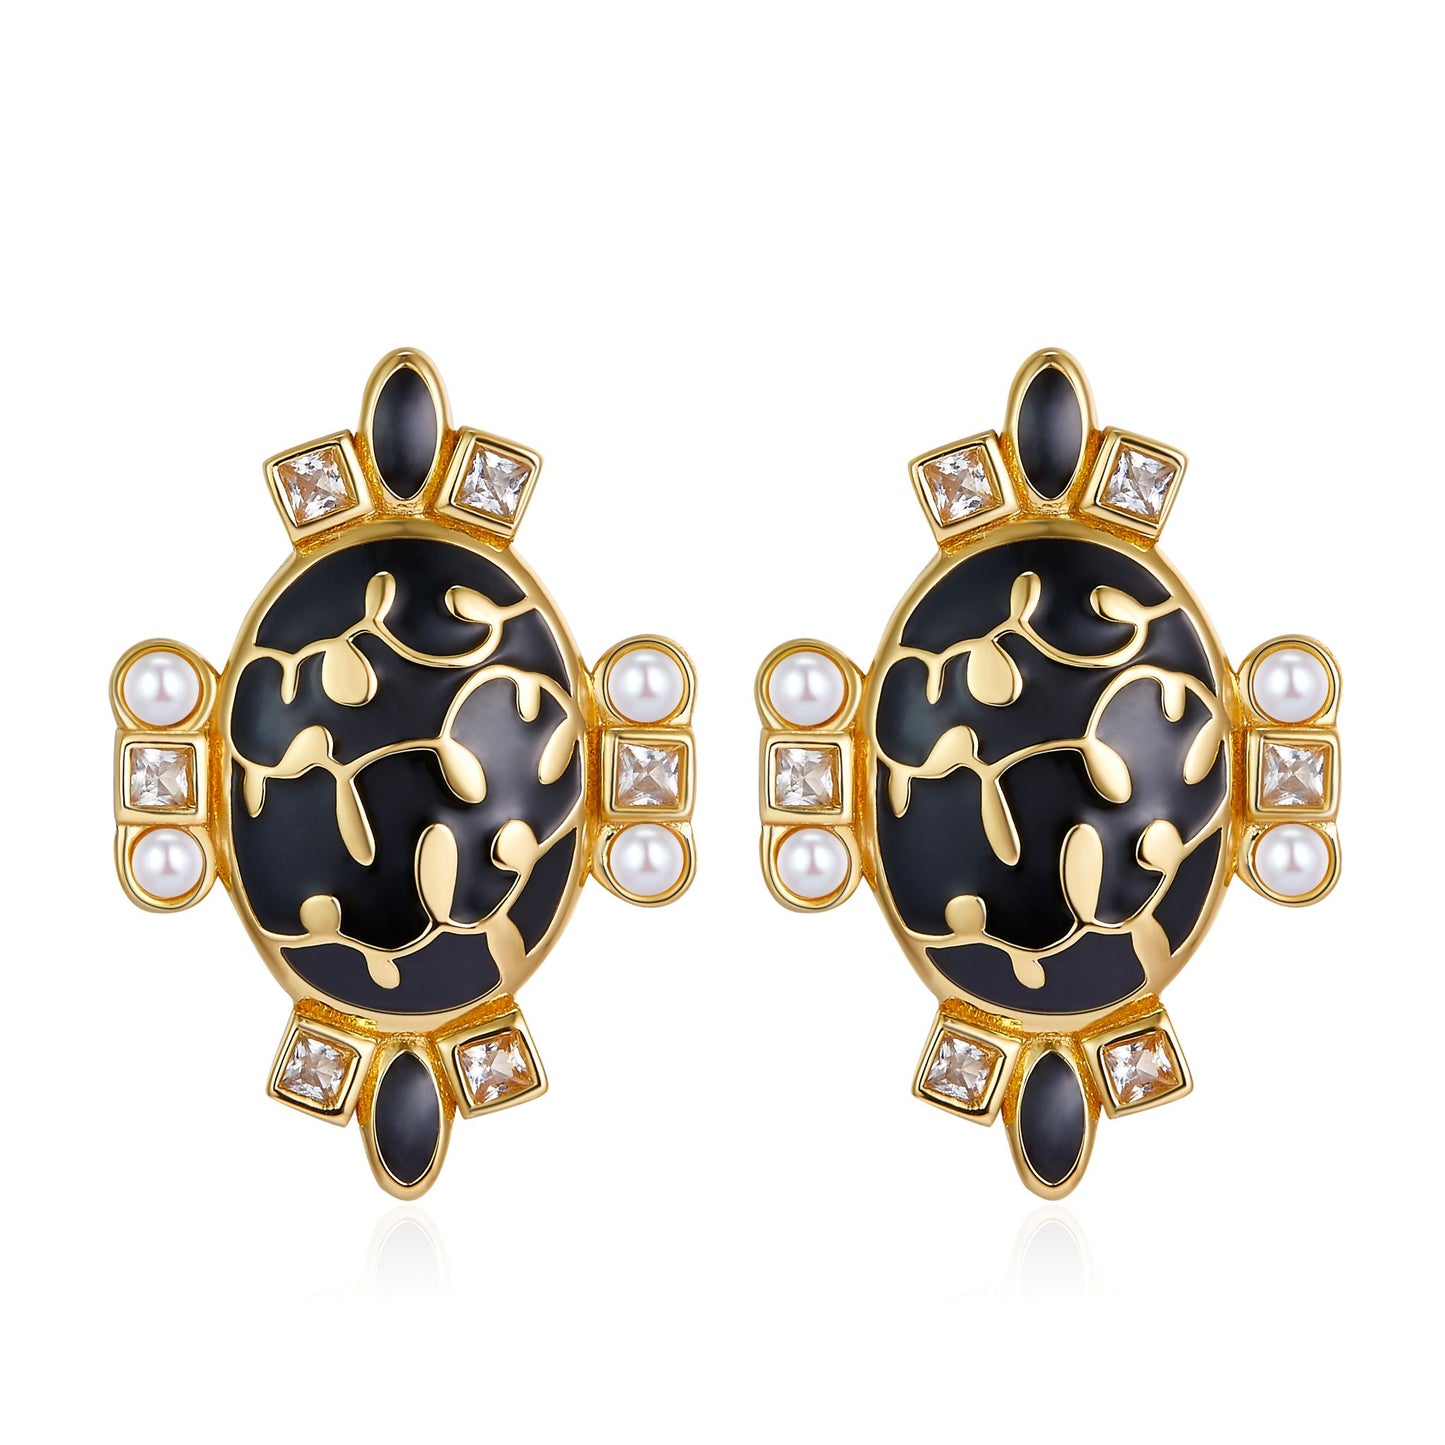 Black & Golden Oval Enamel with Pearl Studs Earrings for Women